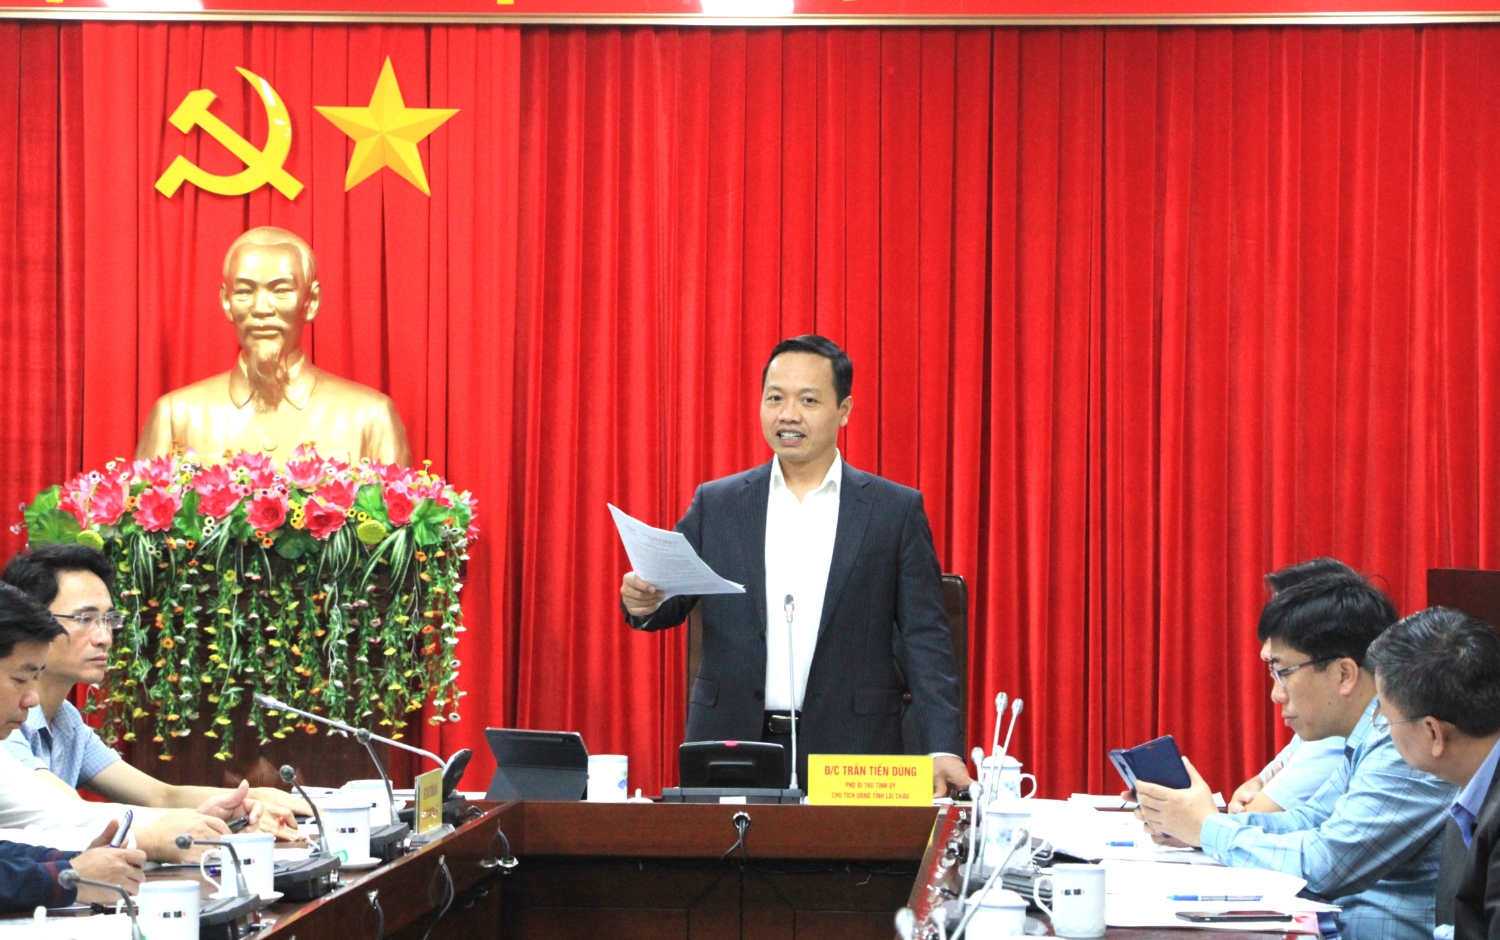 Chủ tịch UBND tỉnh Trần Tiến Dũng kết luận cuộc họp